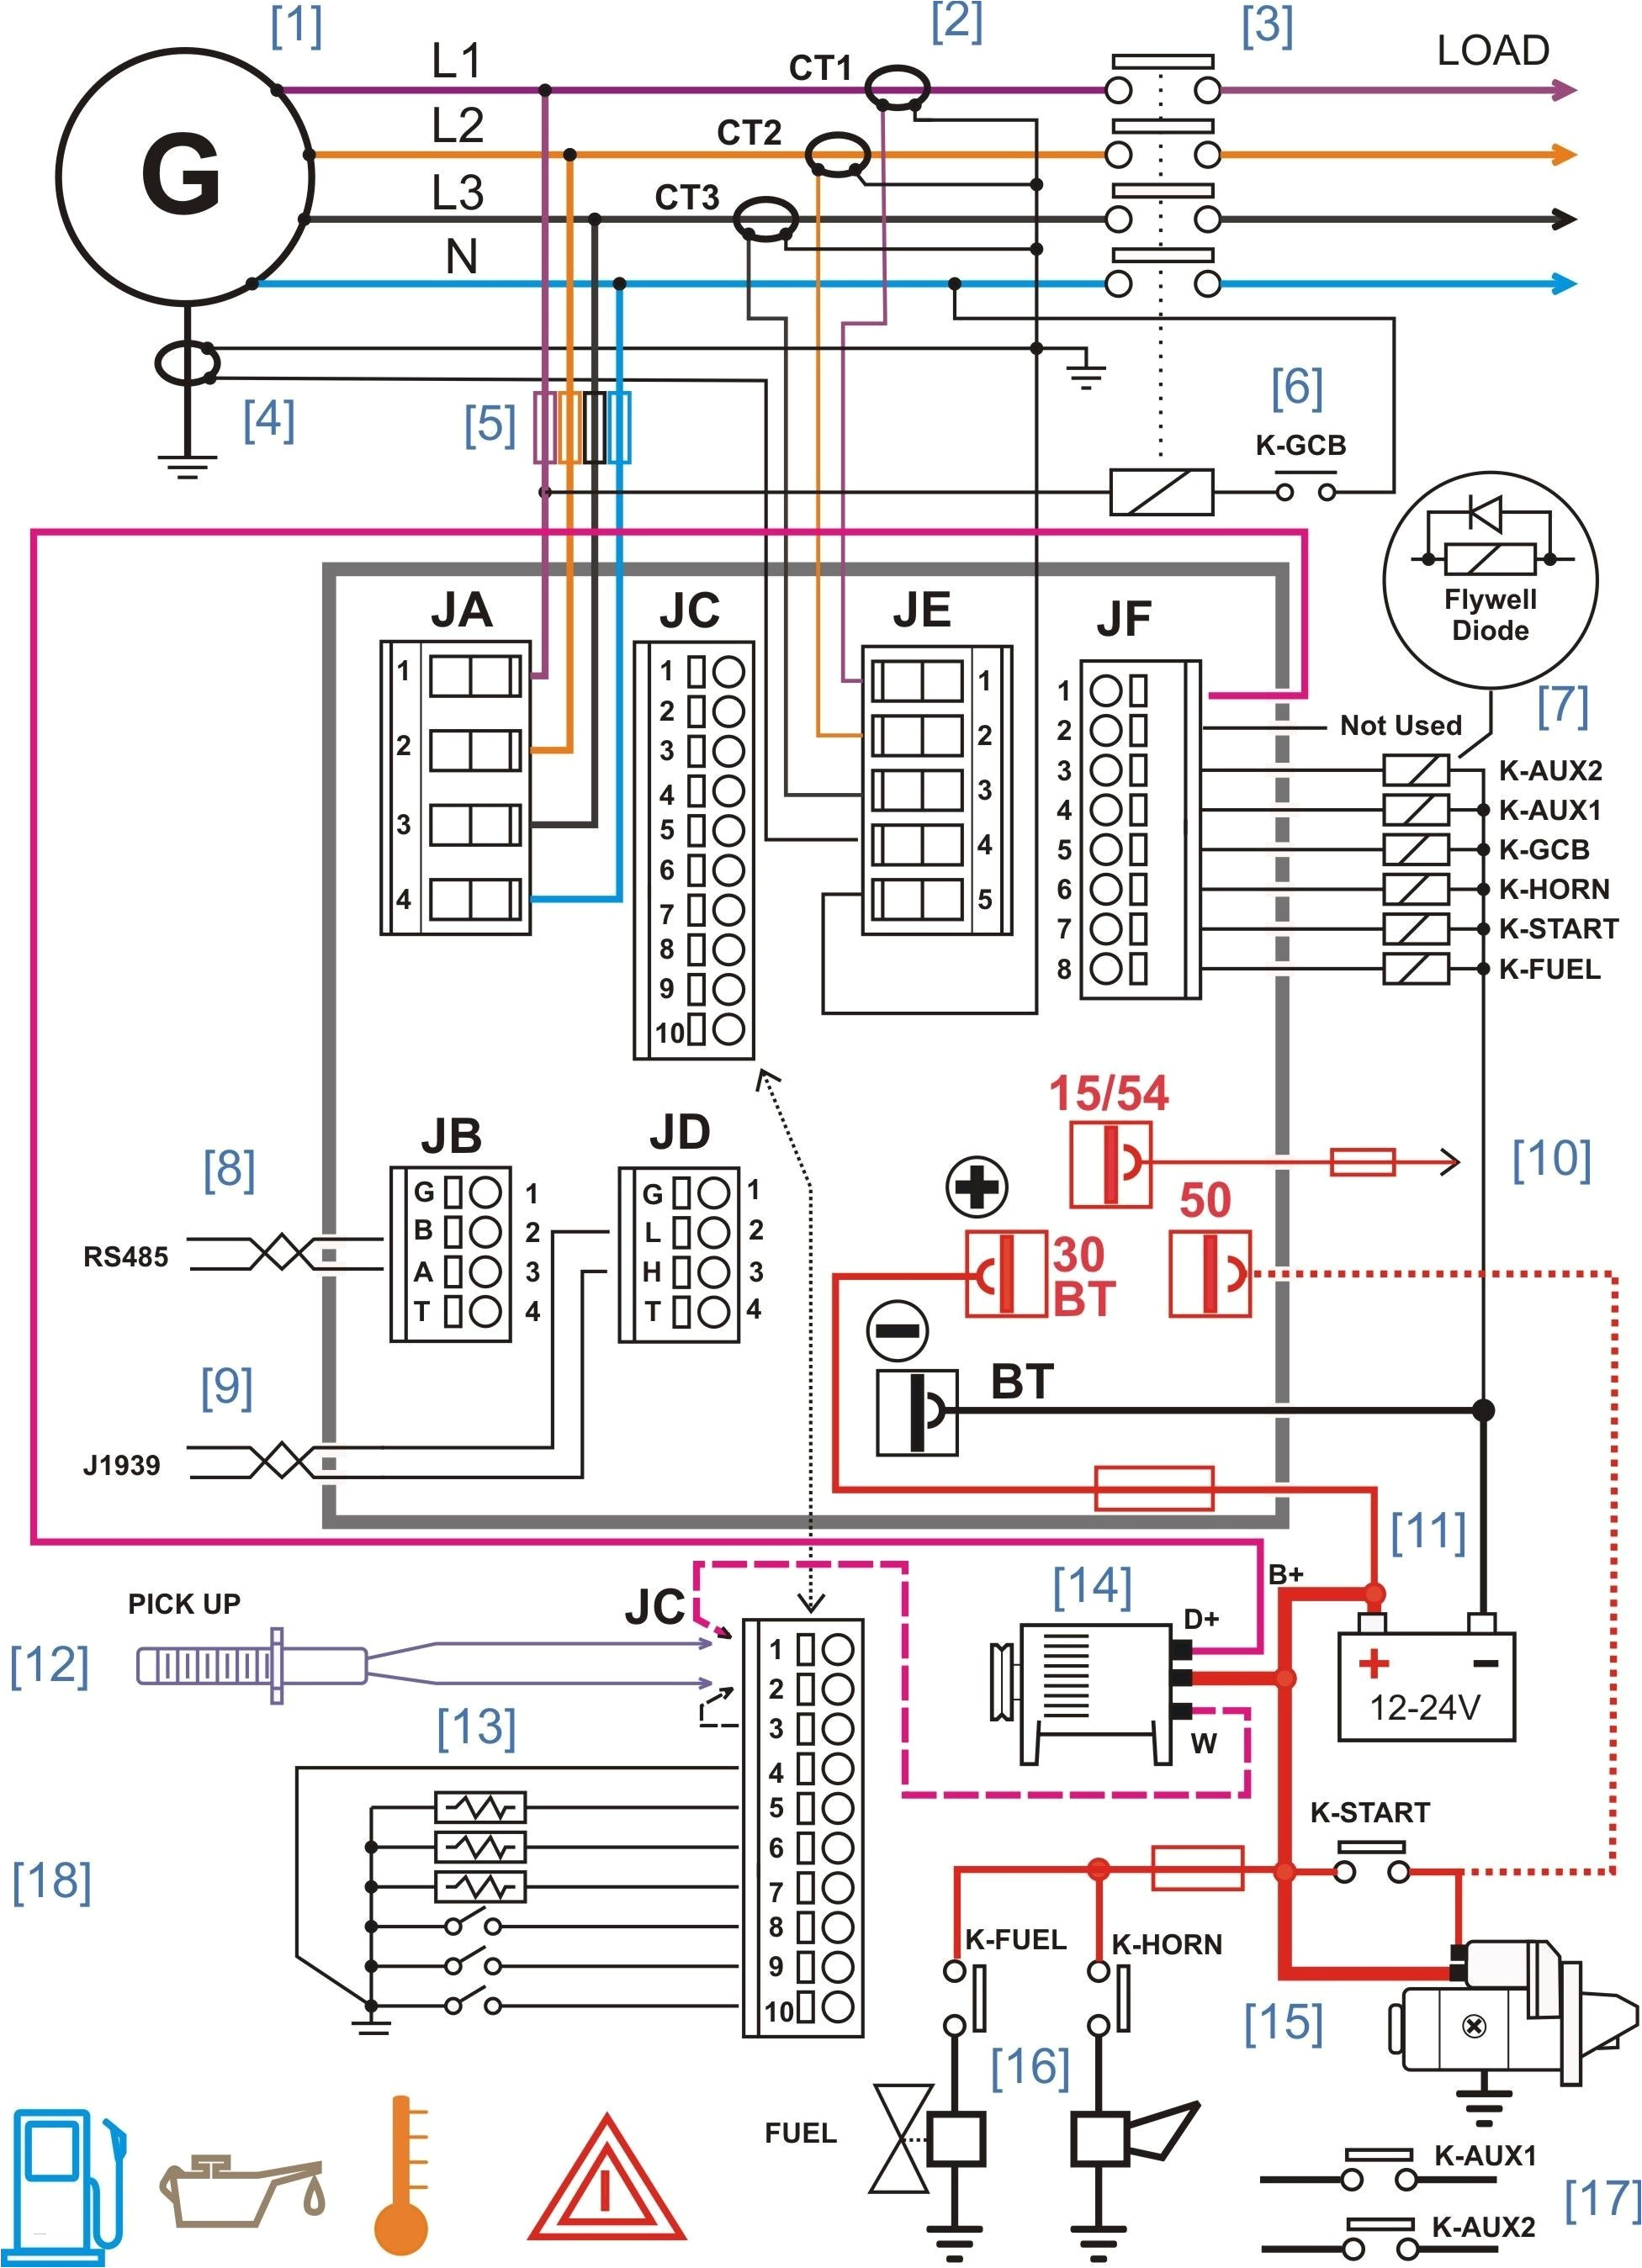 bmw wiring diagram program general wiring diagram dataelectrical wiring diagram bmw e46 unique bmw wiring diagram